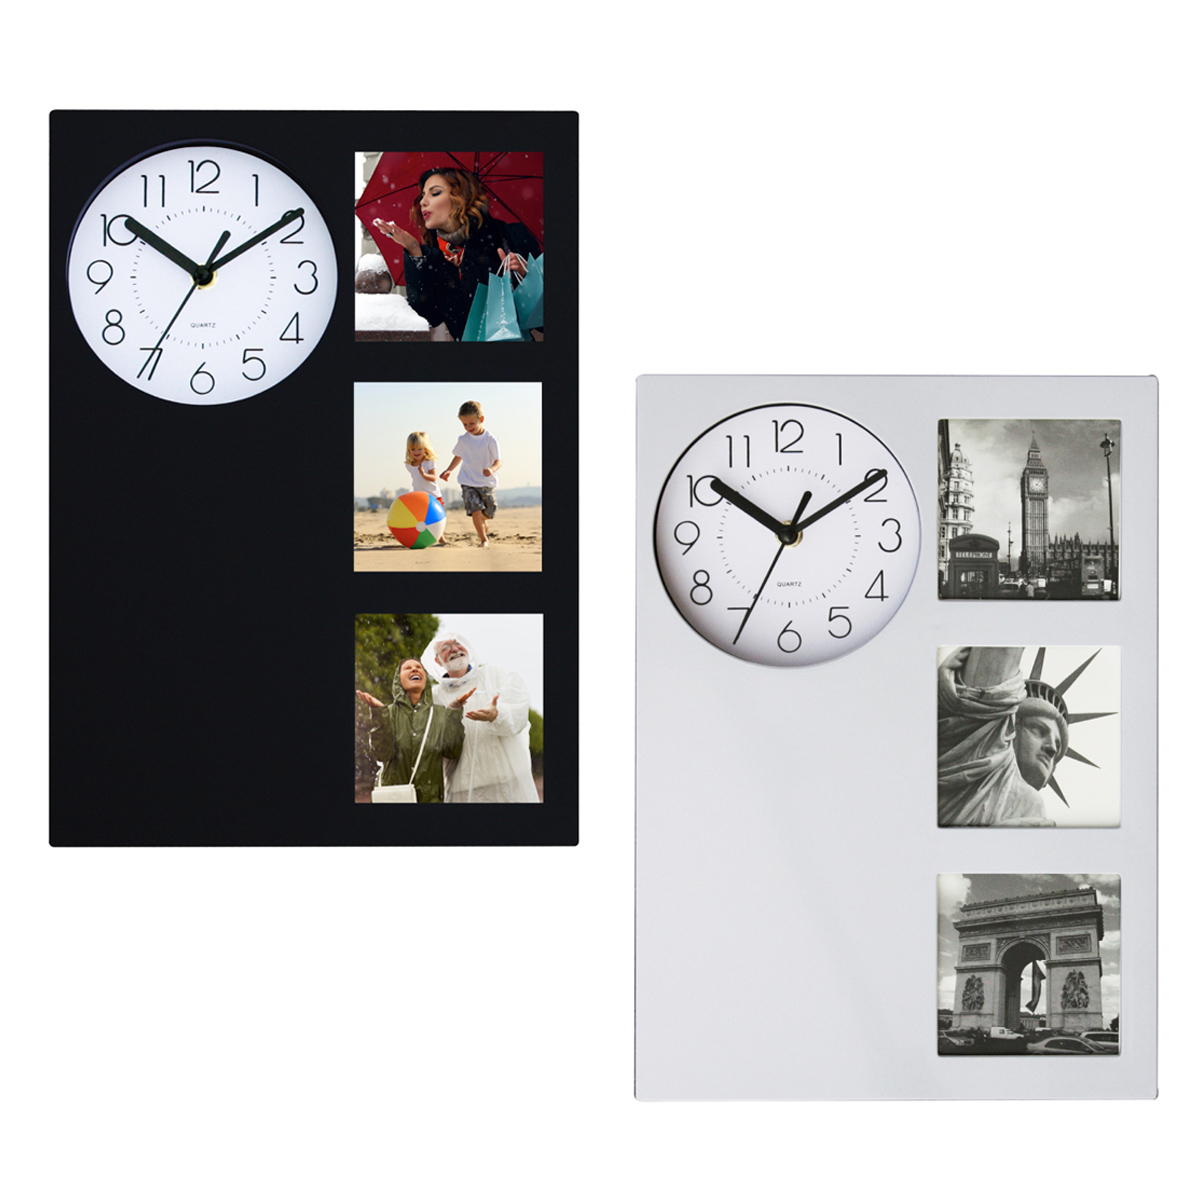 לוגאנו - שעון קיר, מנגנון SWEEP.
3 מסגרות לתמונות.
מידות התמונה למסגרת: 9.5x9.5  ס